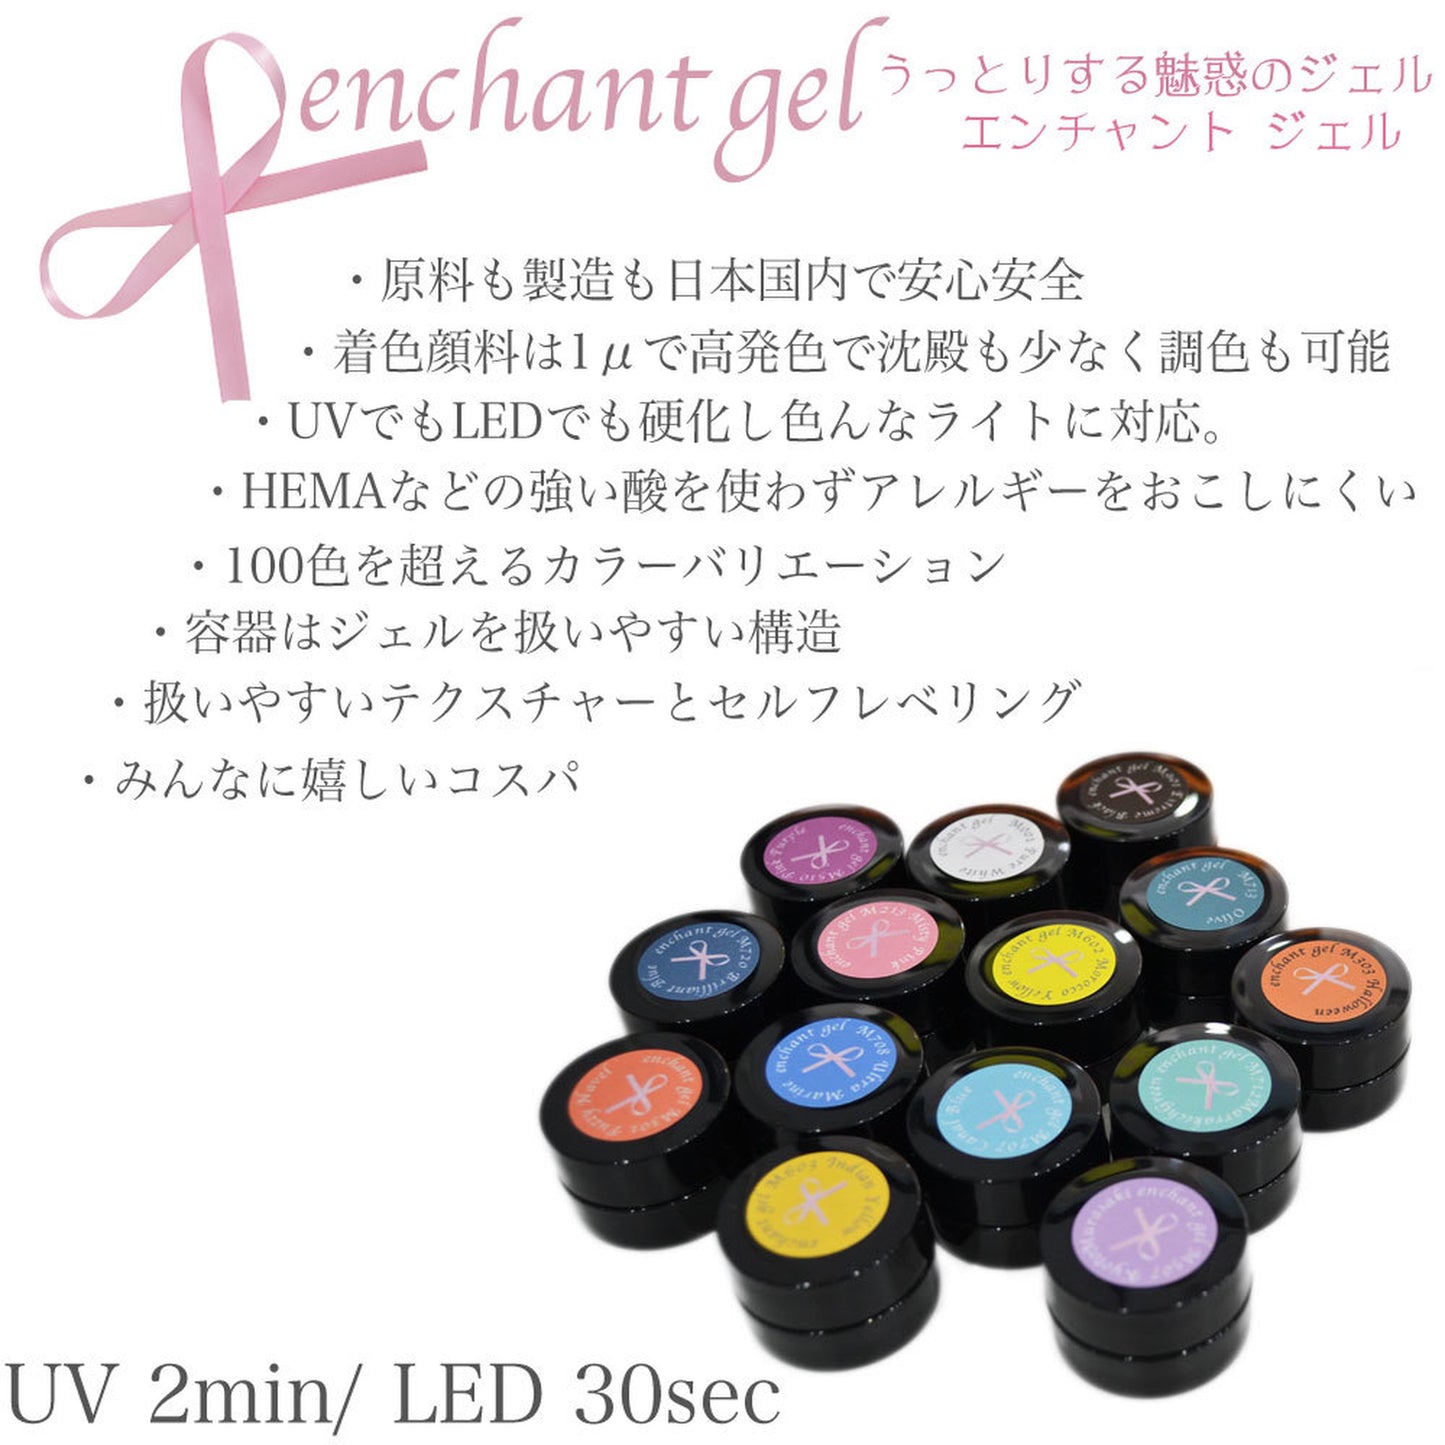 enchant color gel M719 AsaiMauve3g/ マットカラー M719アサイーモーブ 3グラム